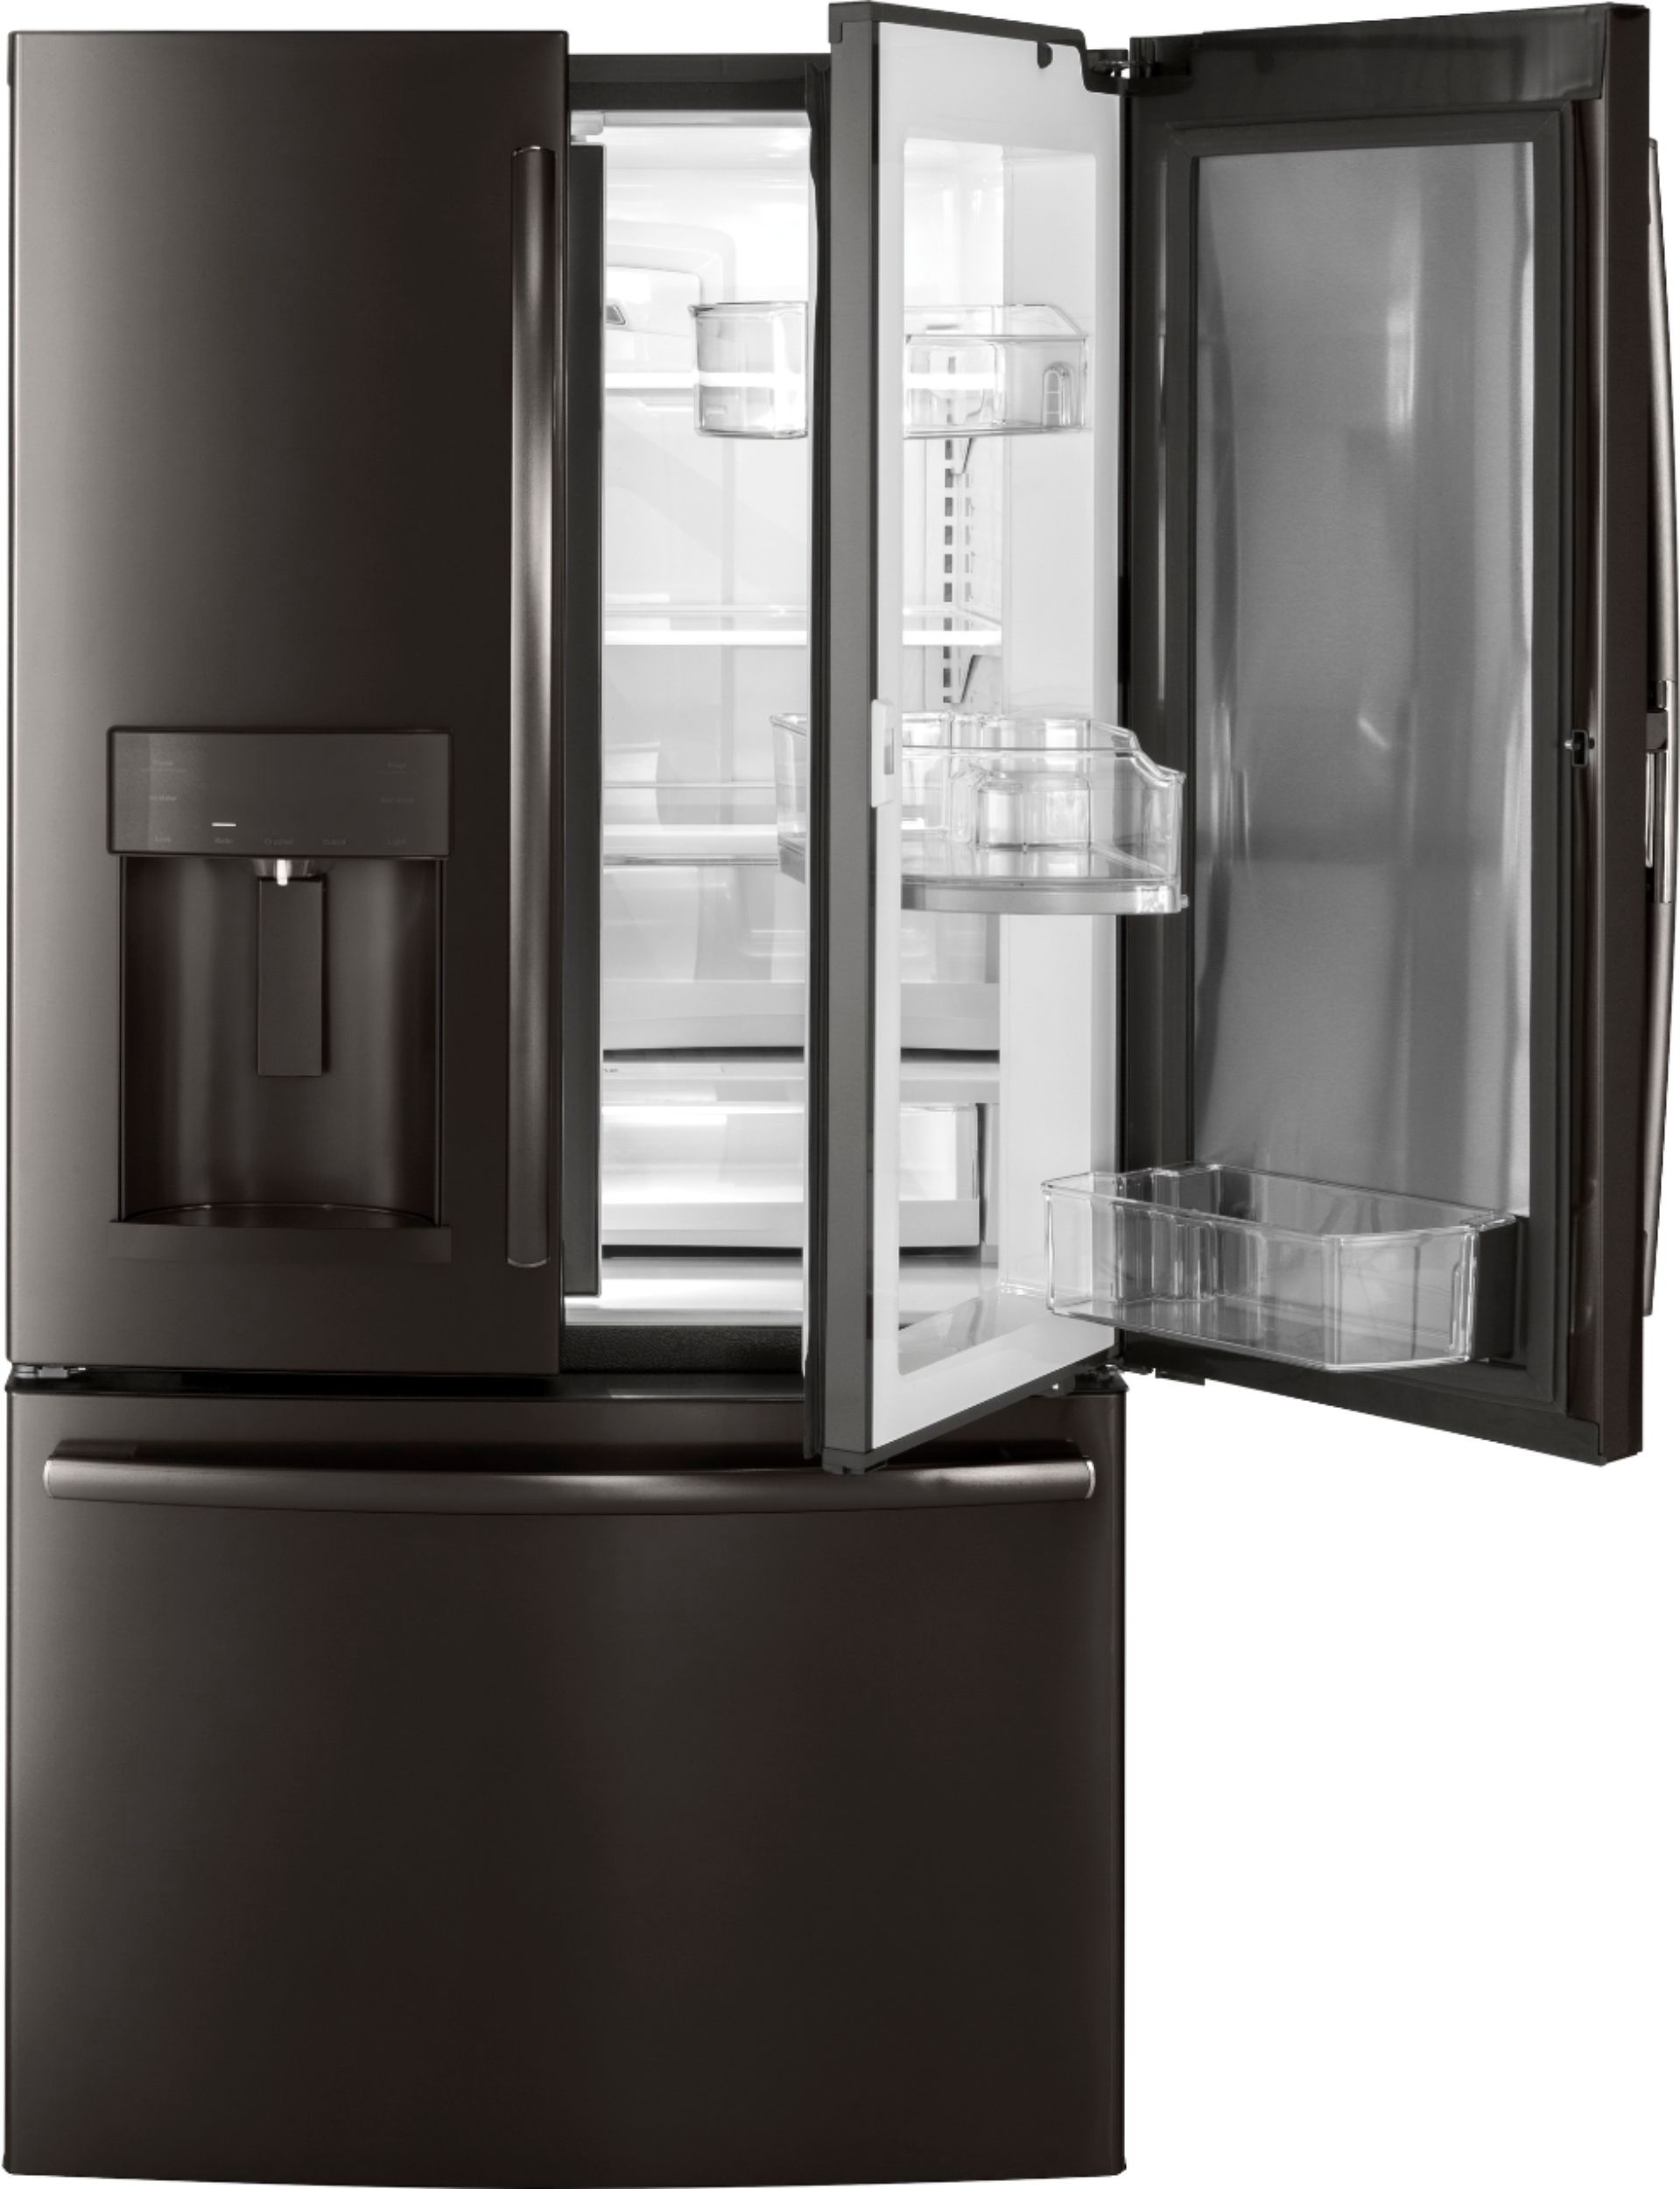 Ge Stainless Steel Refrigerator Door Replacement : Ge Profile Series 22 Ge Stainless Steel Refrigerator Door Replacement